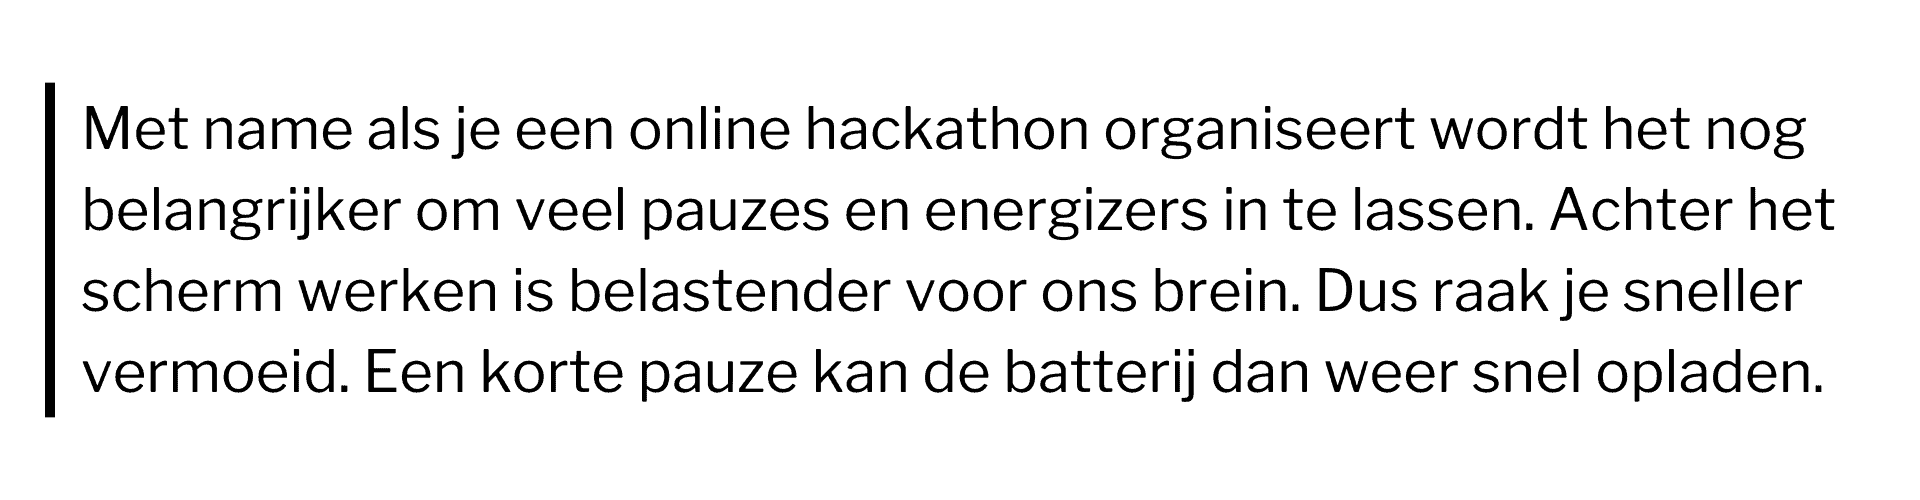 Hackathon organiseren quote